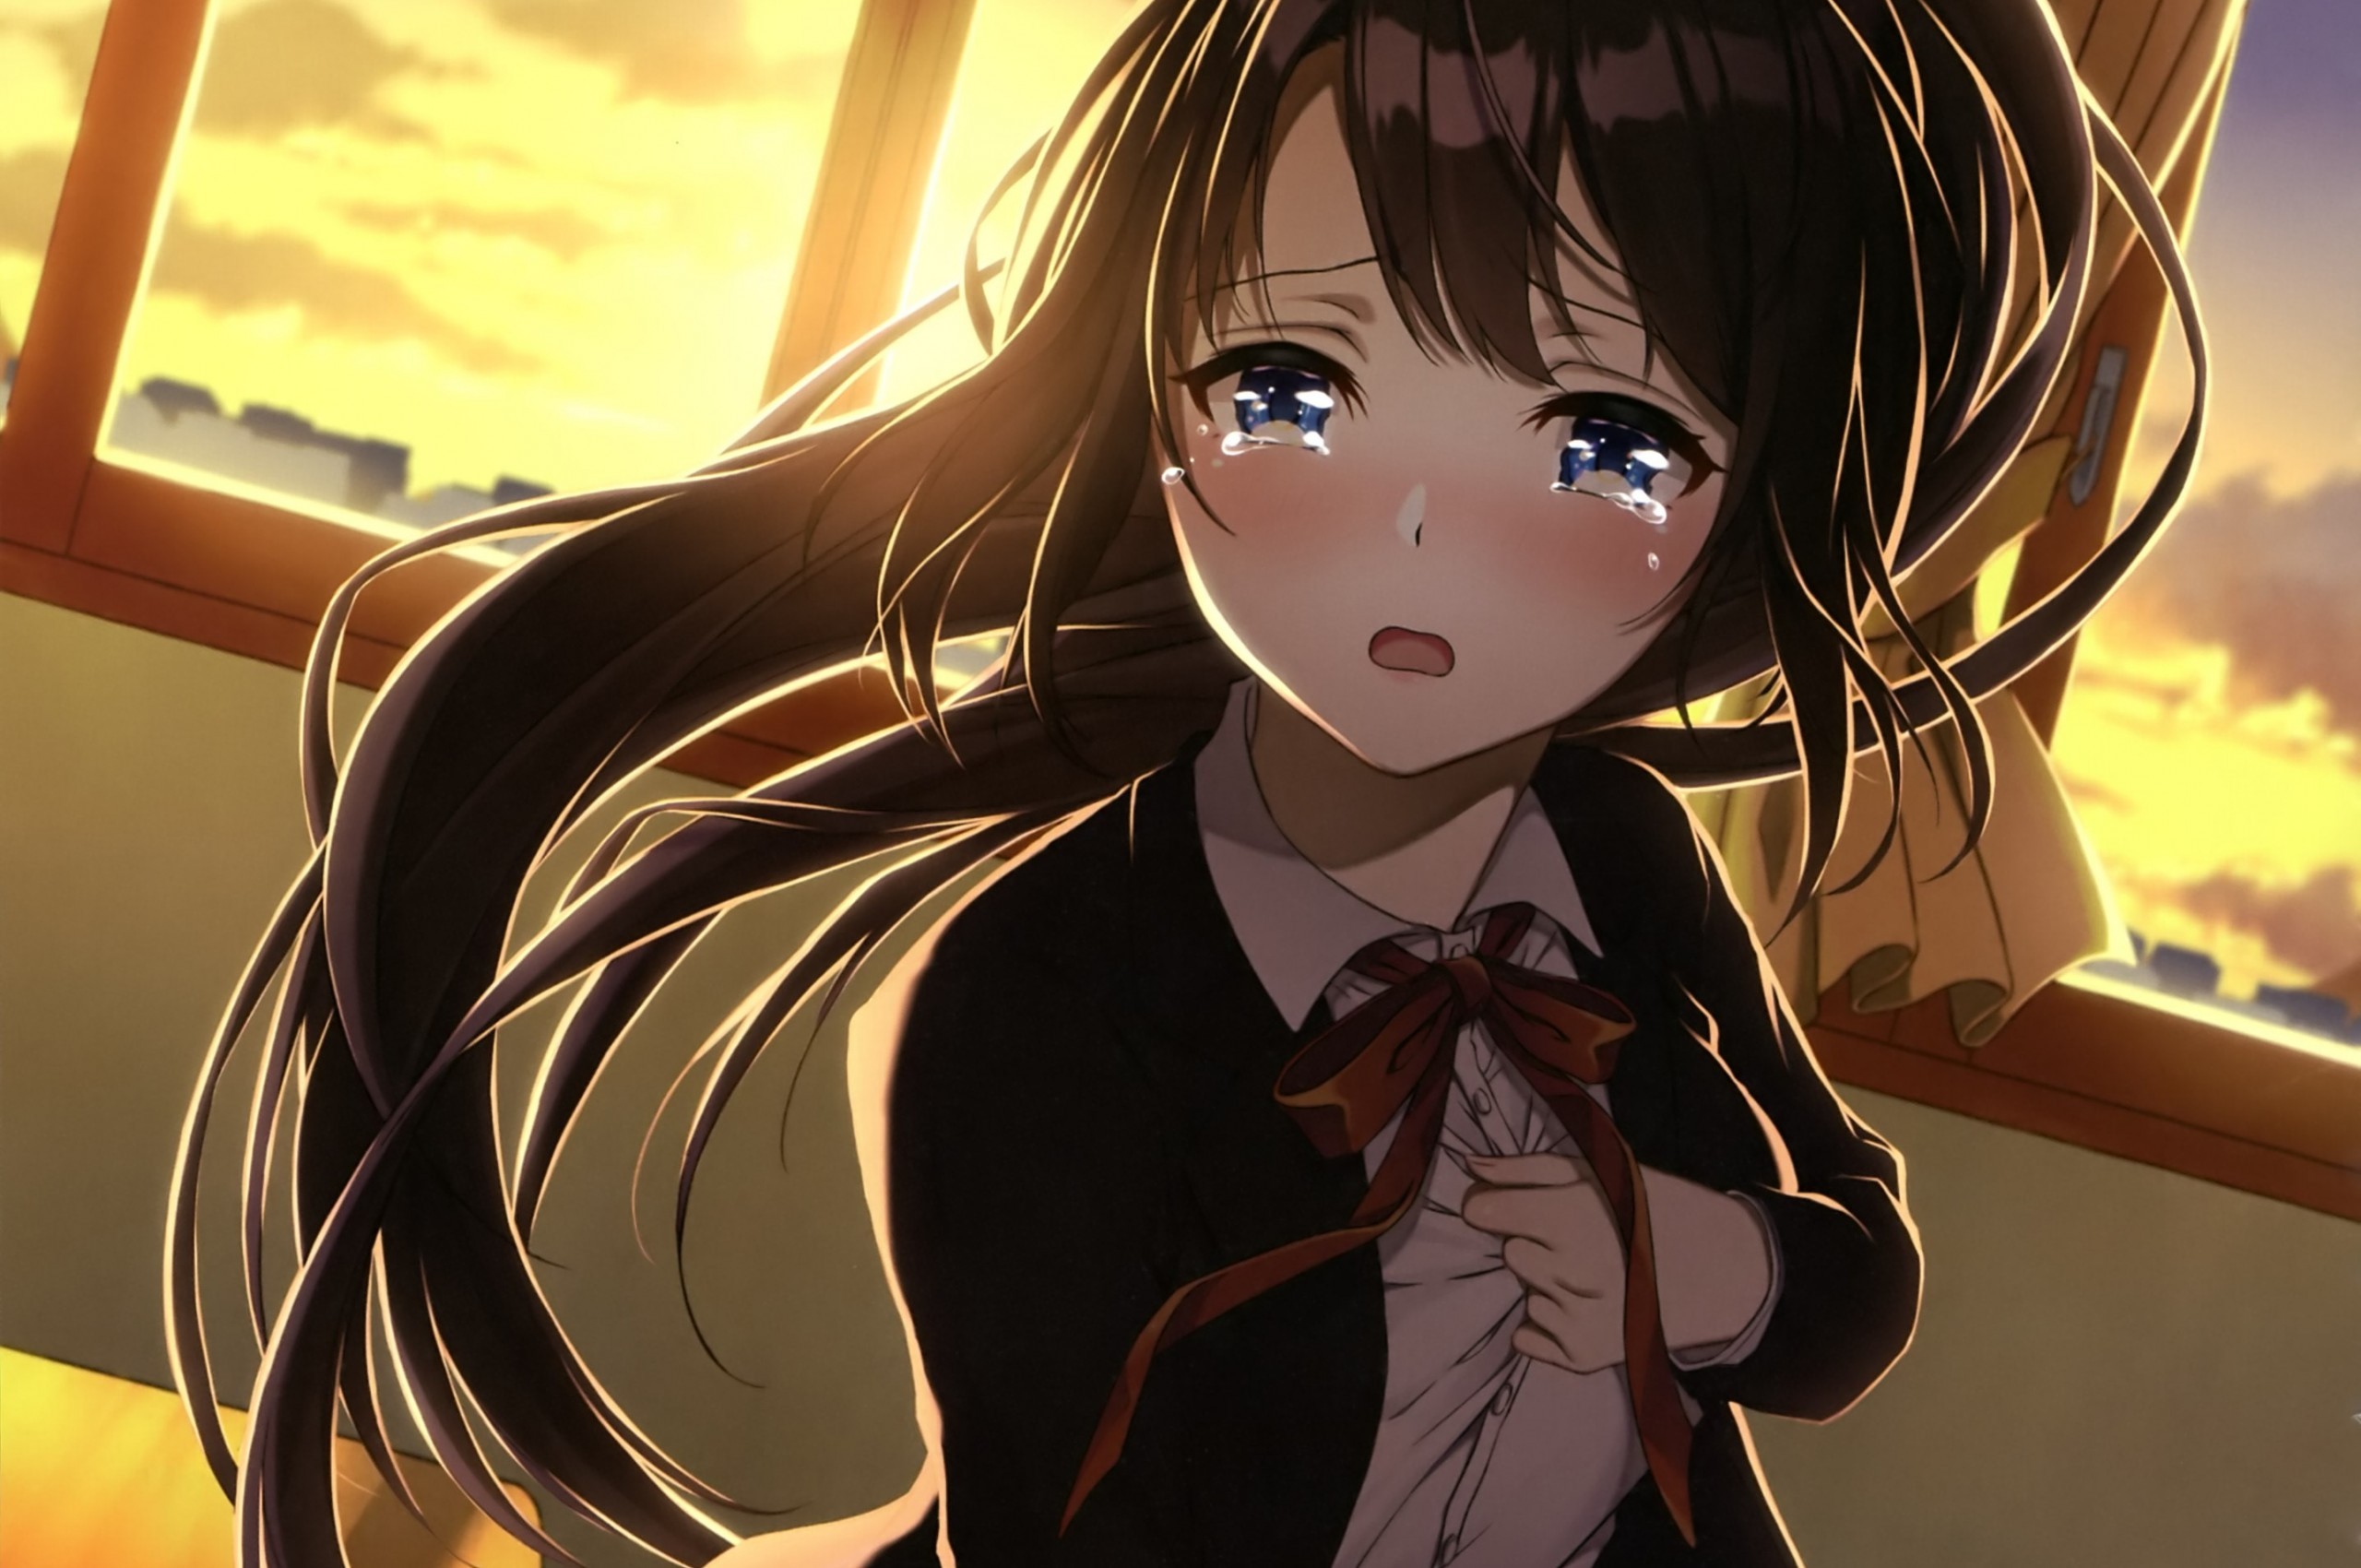 Anime Girl, Crying, Classroom, Sad Face, Brown Hair, - Sad Anime Girl Crying  - 2560x1700 Wallpaper 